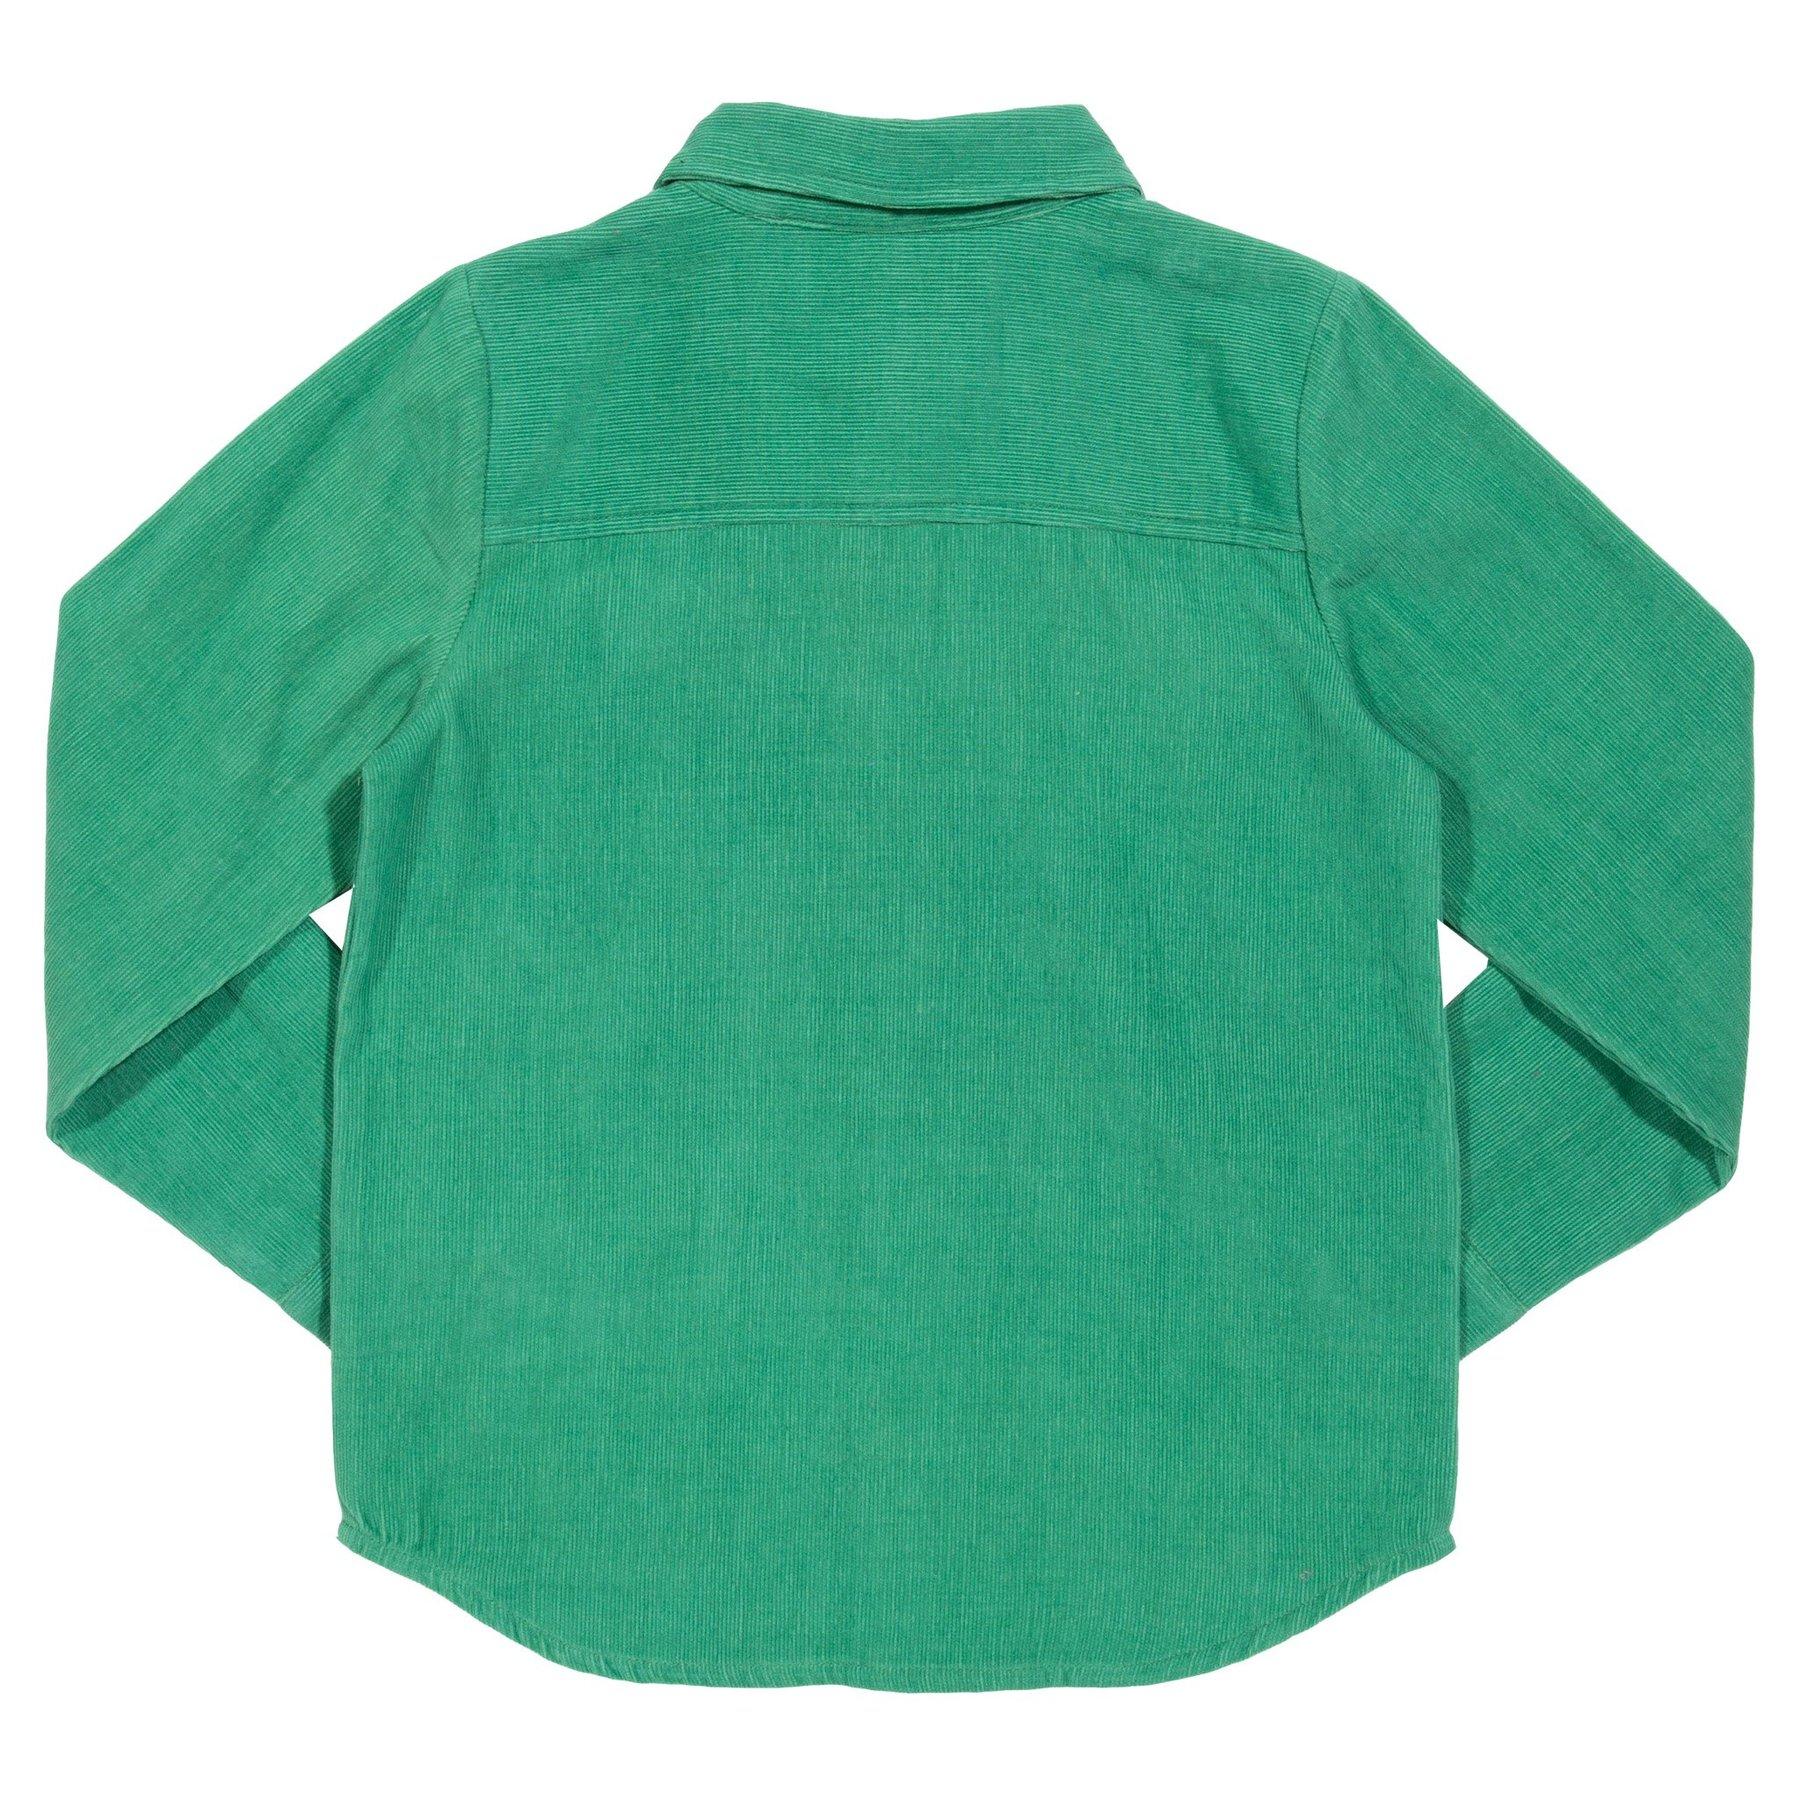 Kite Clothing Classic Cord Shirt back